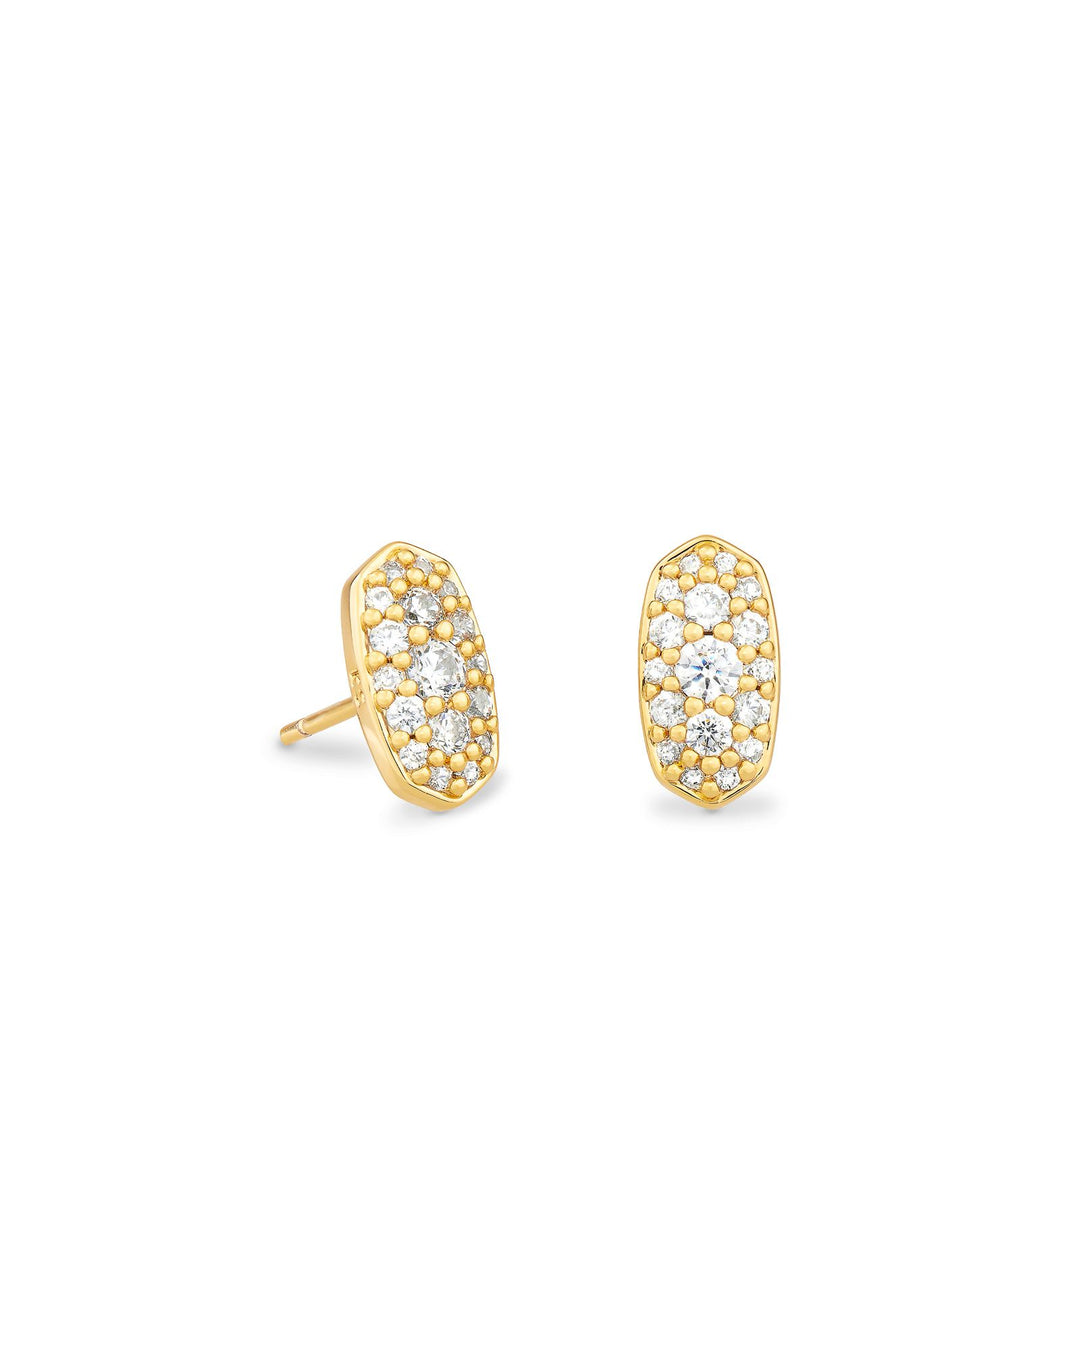 Kendra Scott Grayson Crystal Stud Earrings in Gold